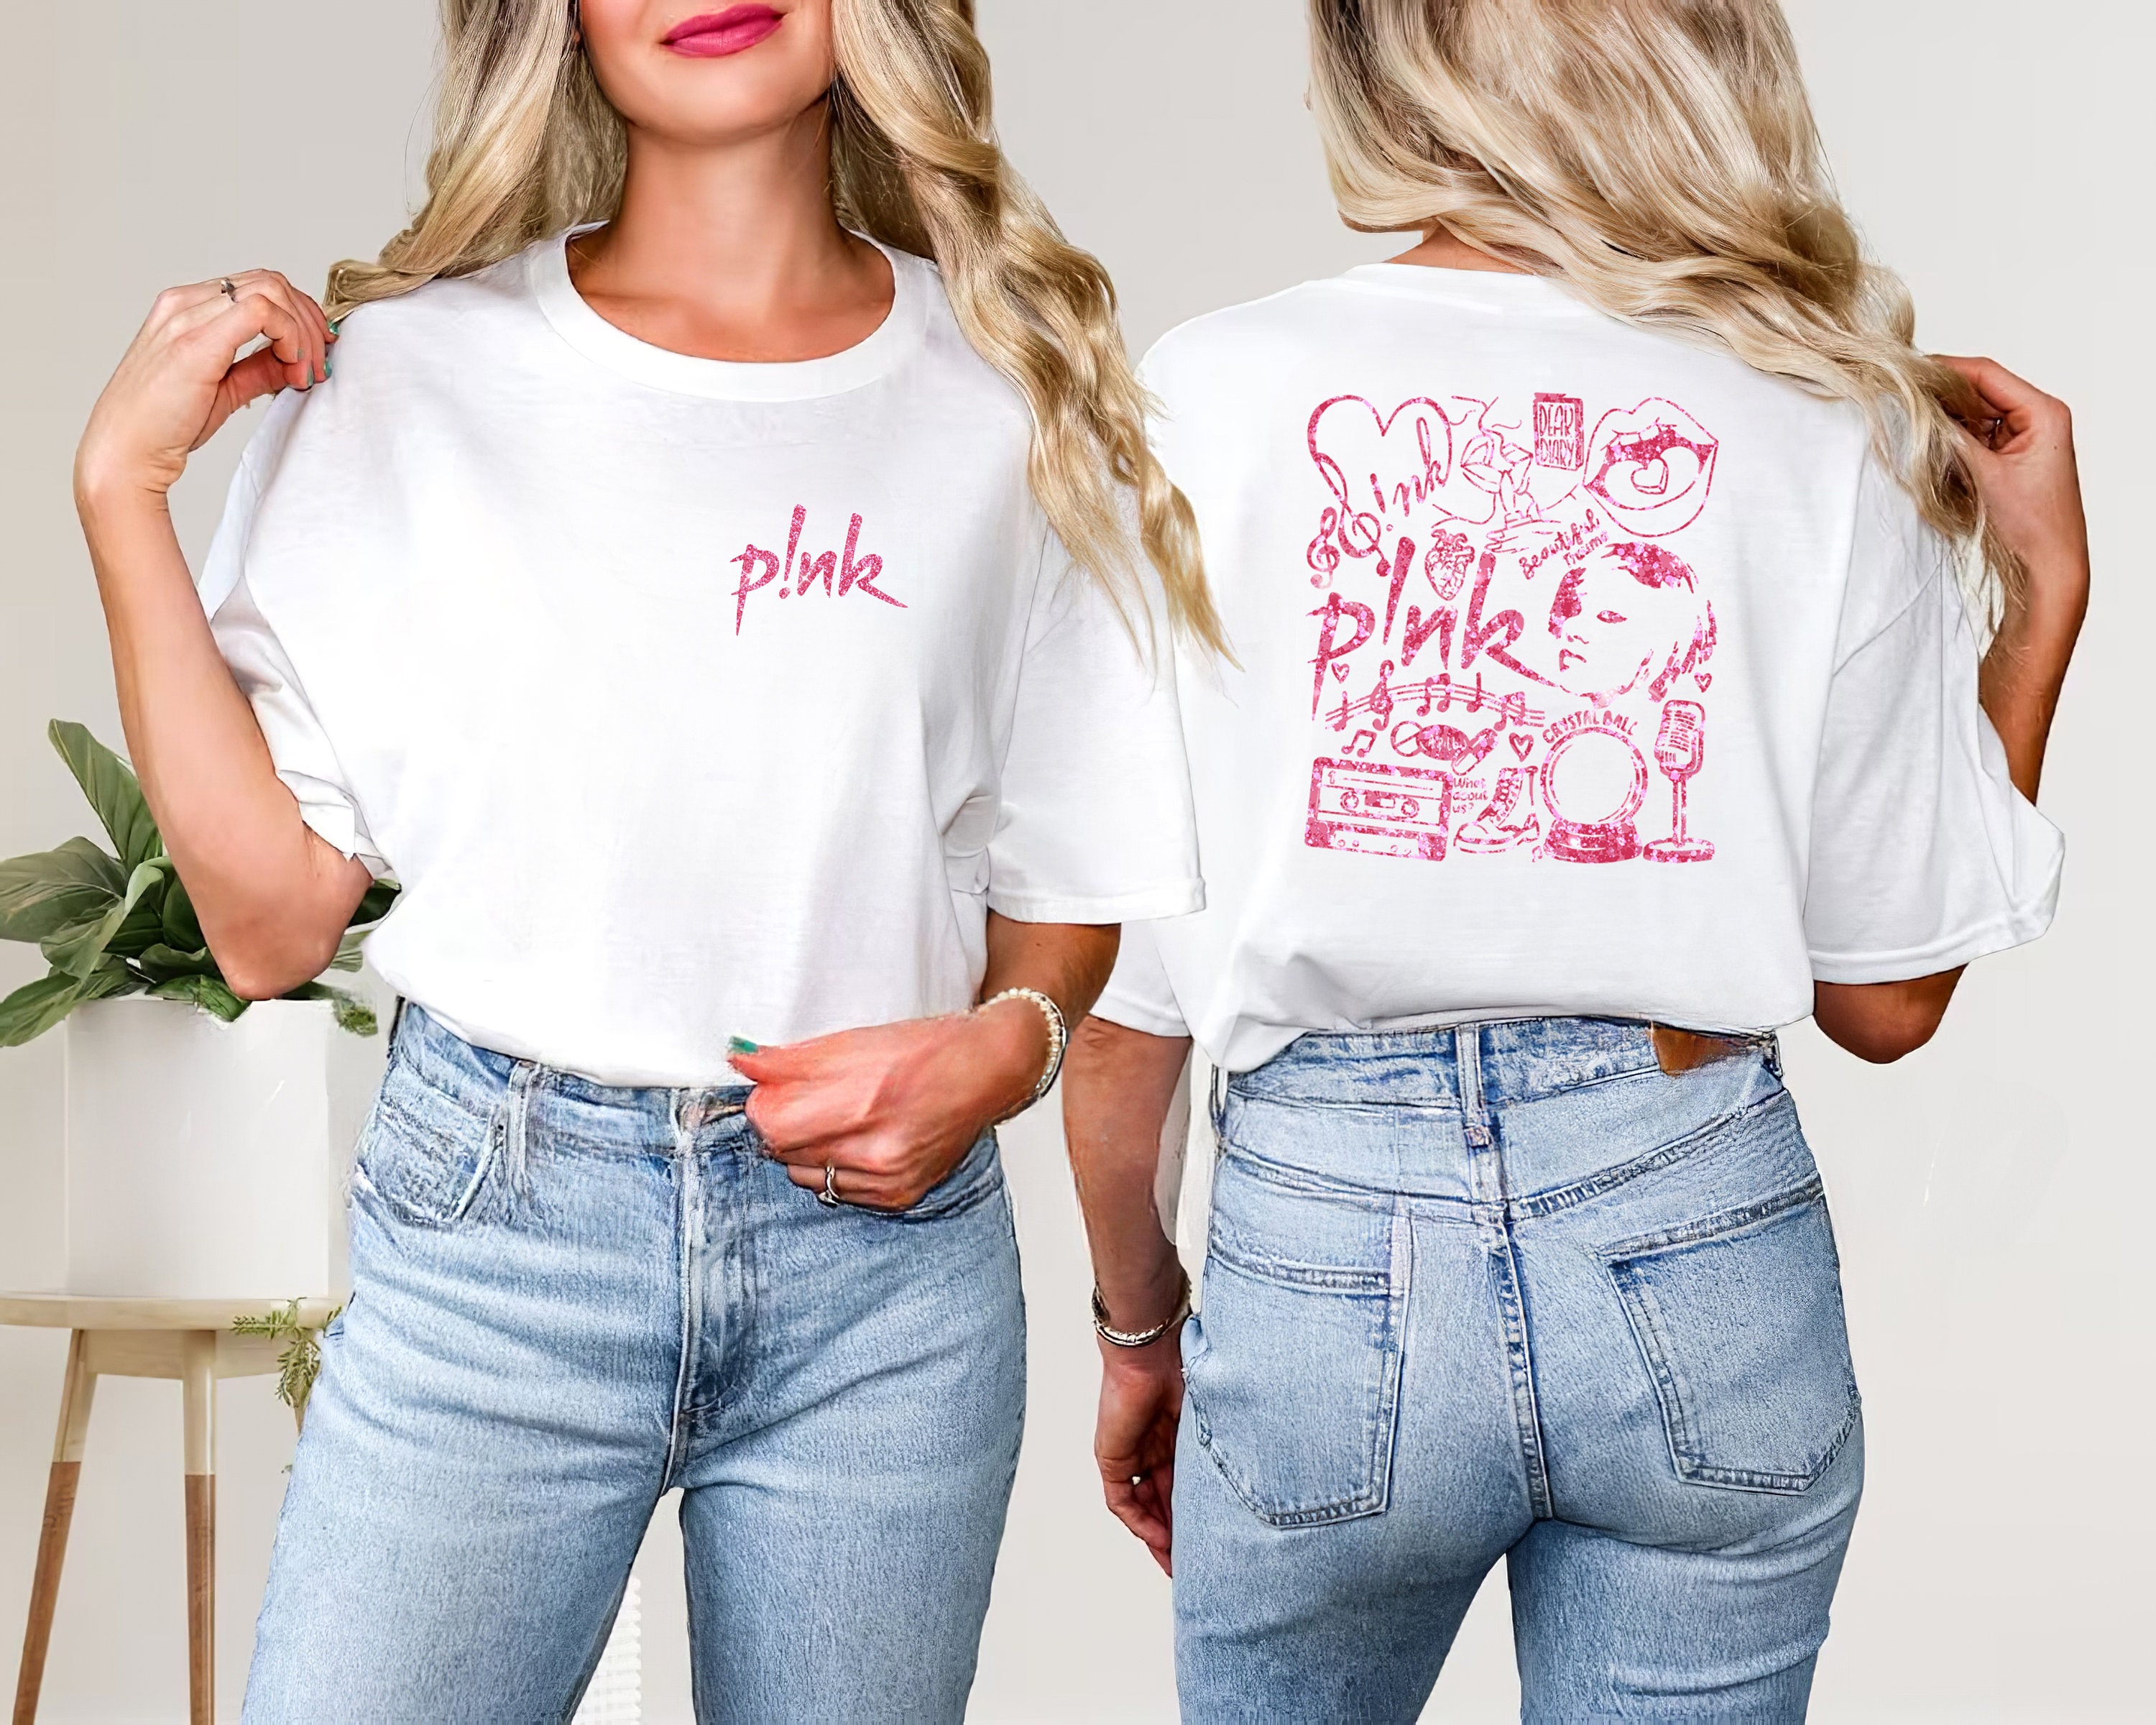 P!nk Summer 2024 Tour T-shirt, Pink Fan LoversT-Shirt